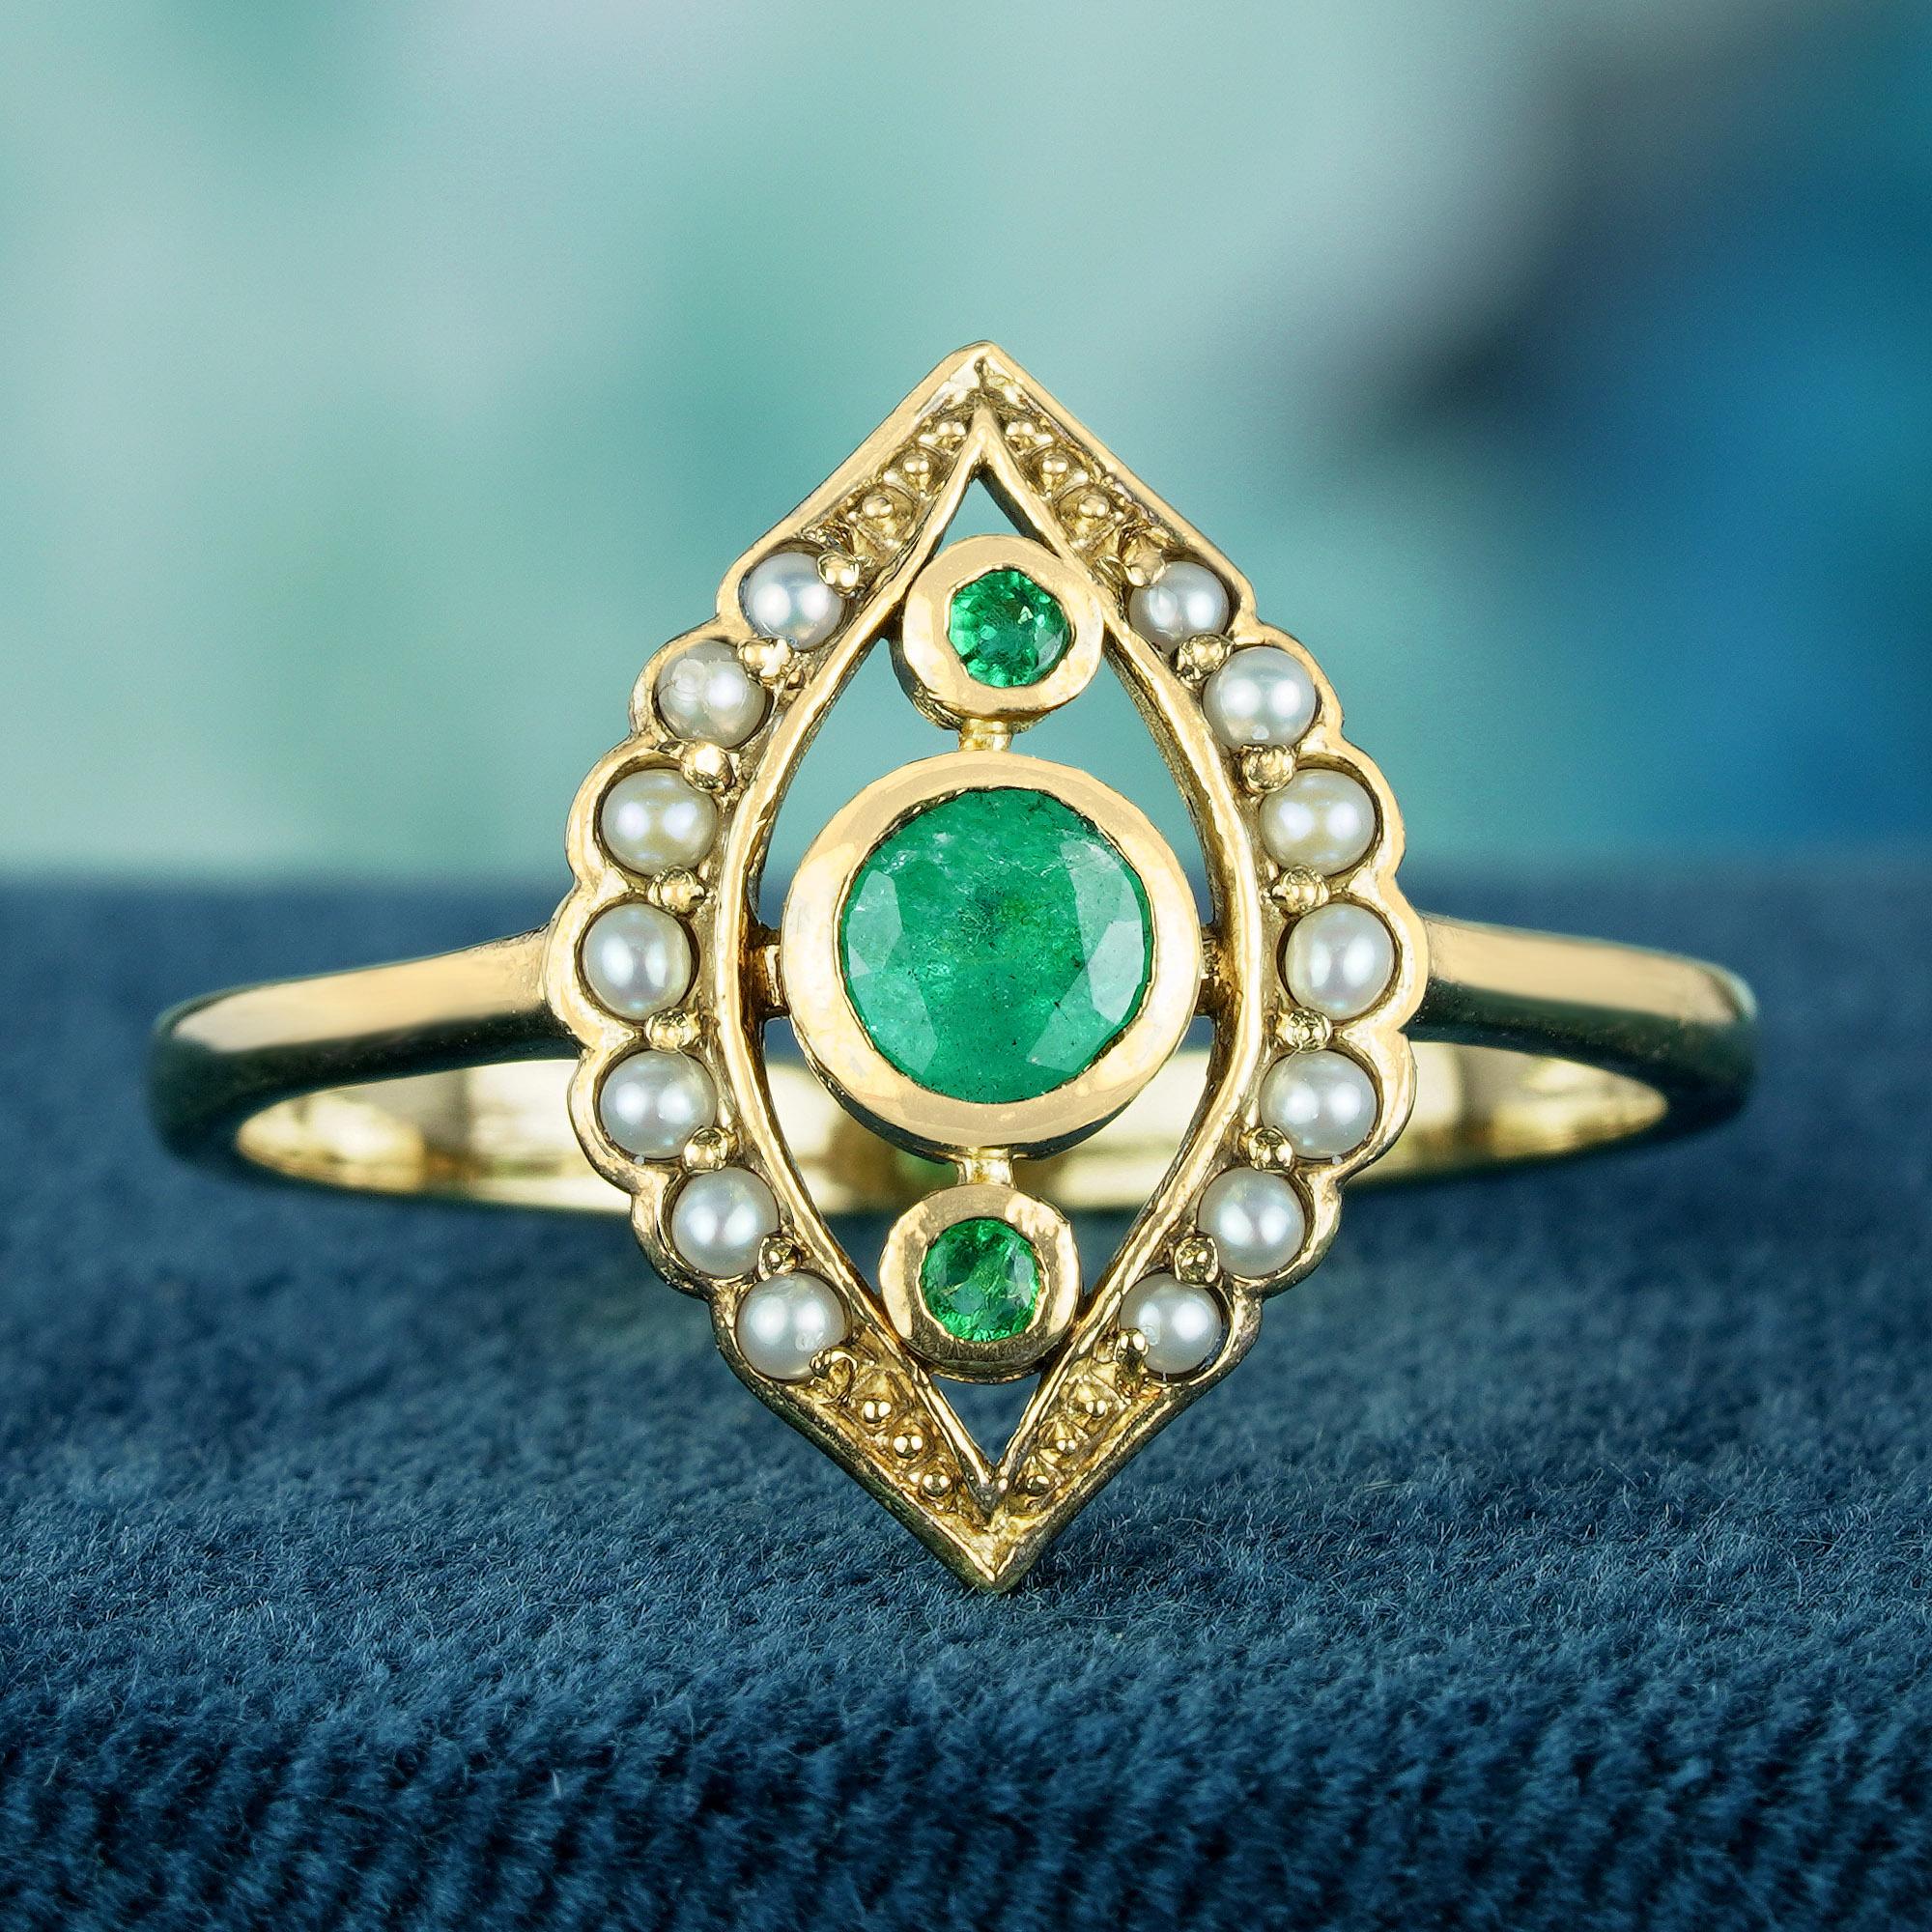 Dieser aus strahlendem Gelbgold gefertigte Ring zeigt drei kaskadenförmige Smaragde in der Mitte, die von zwei kleineren runden Smaragden flankiert werden. Der ovale Rahmen des Bandes wird von kaskadenförmigen runden Perlen auf jeder Seite umgeben,